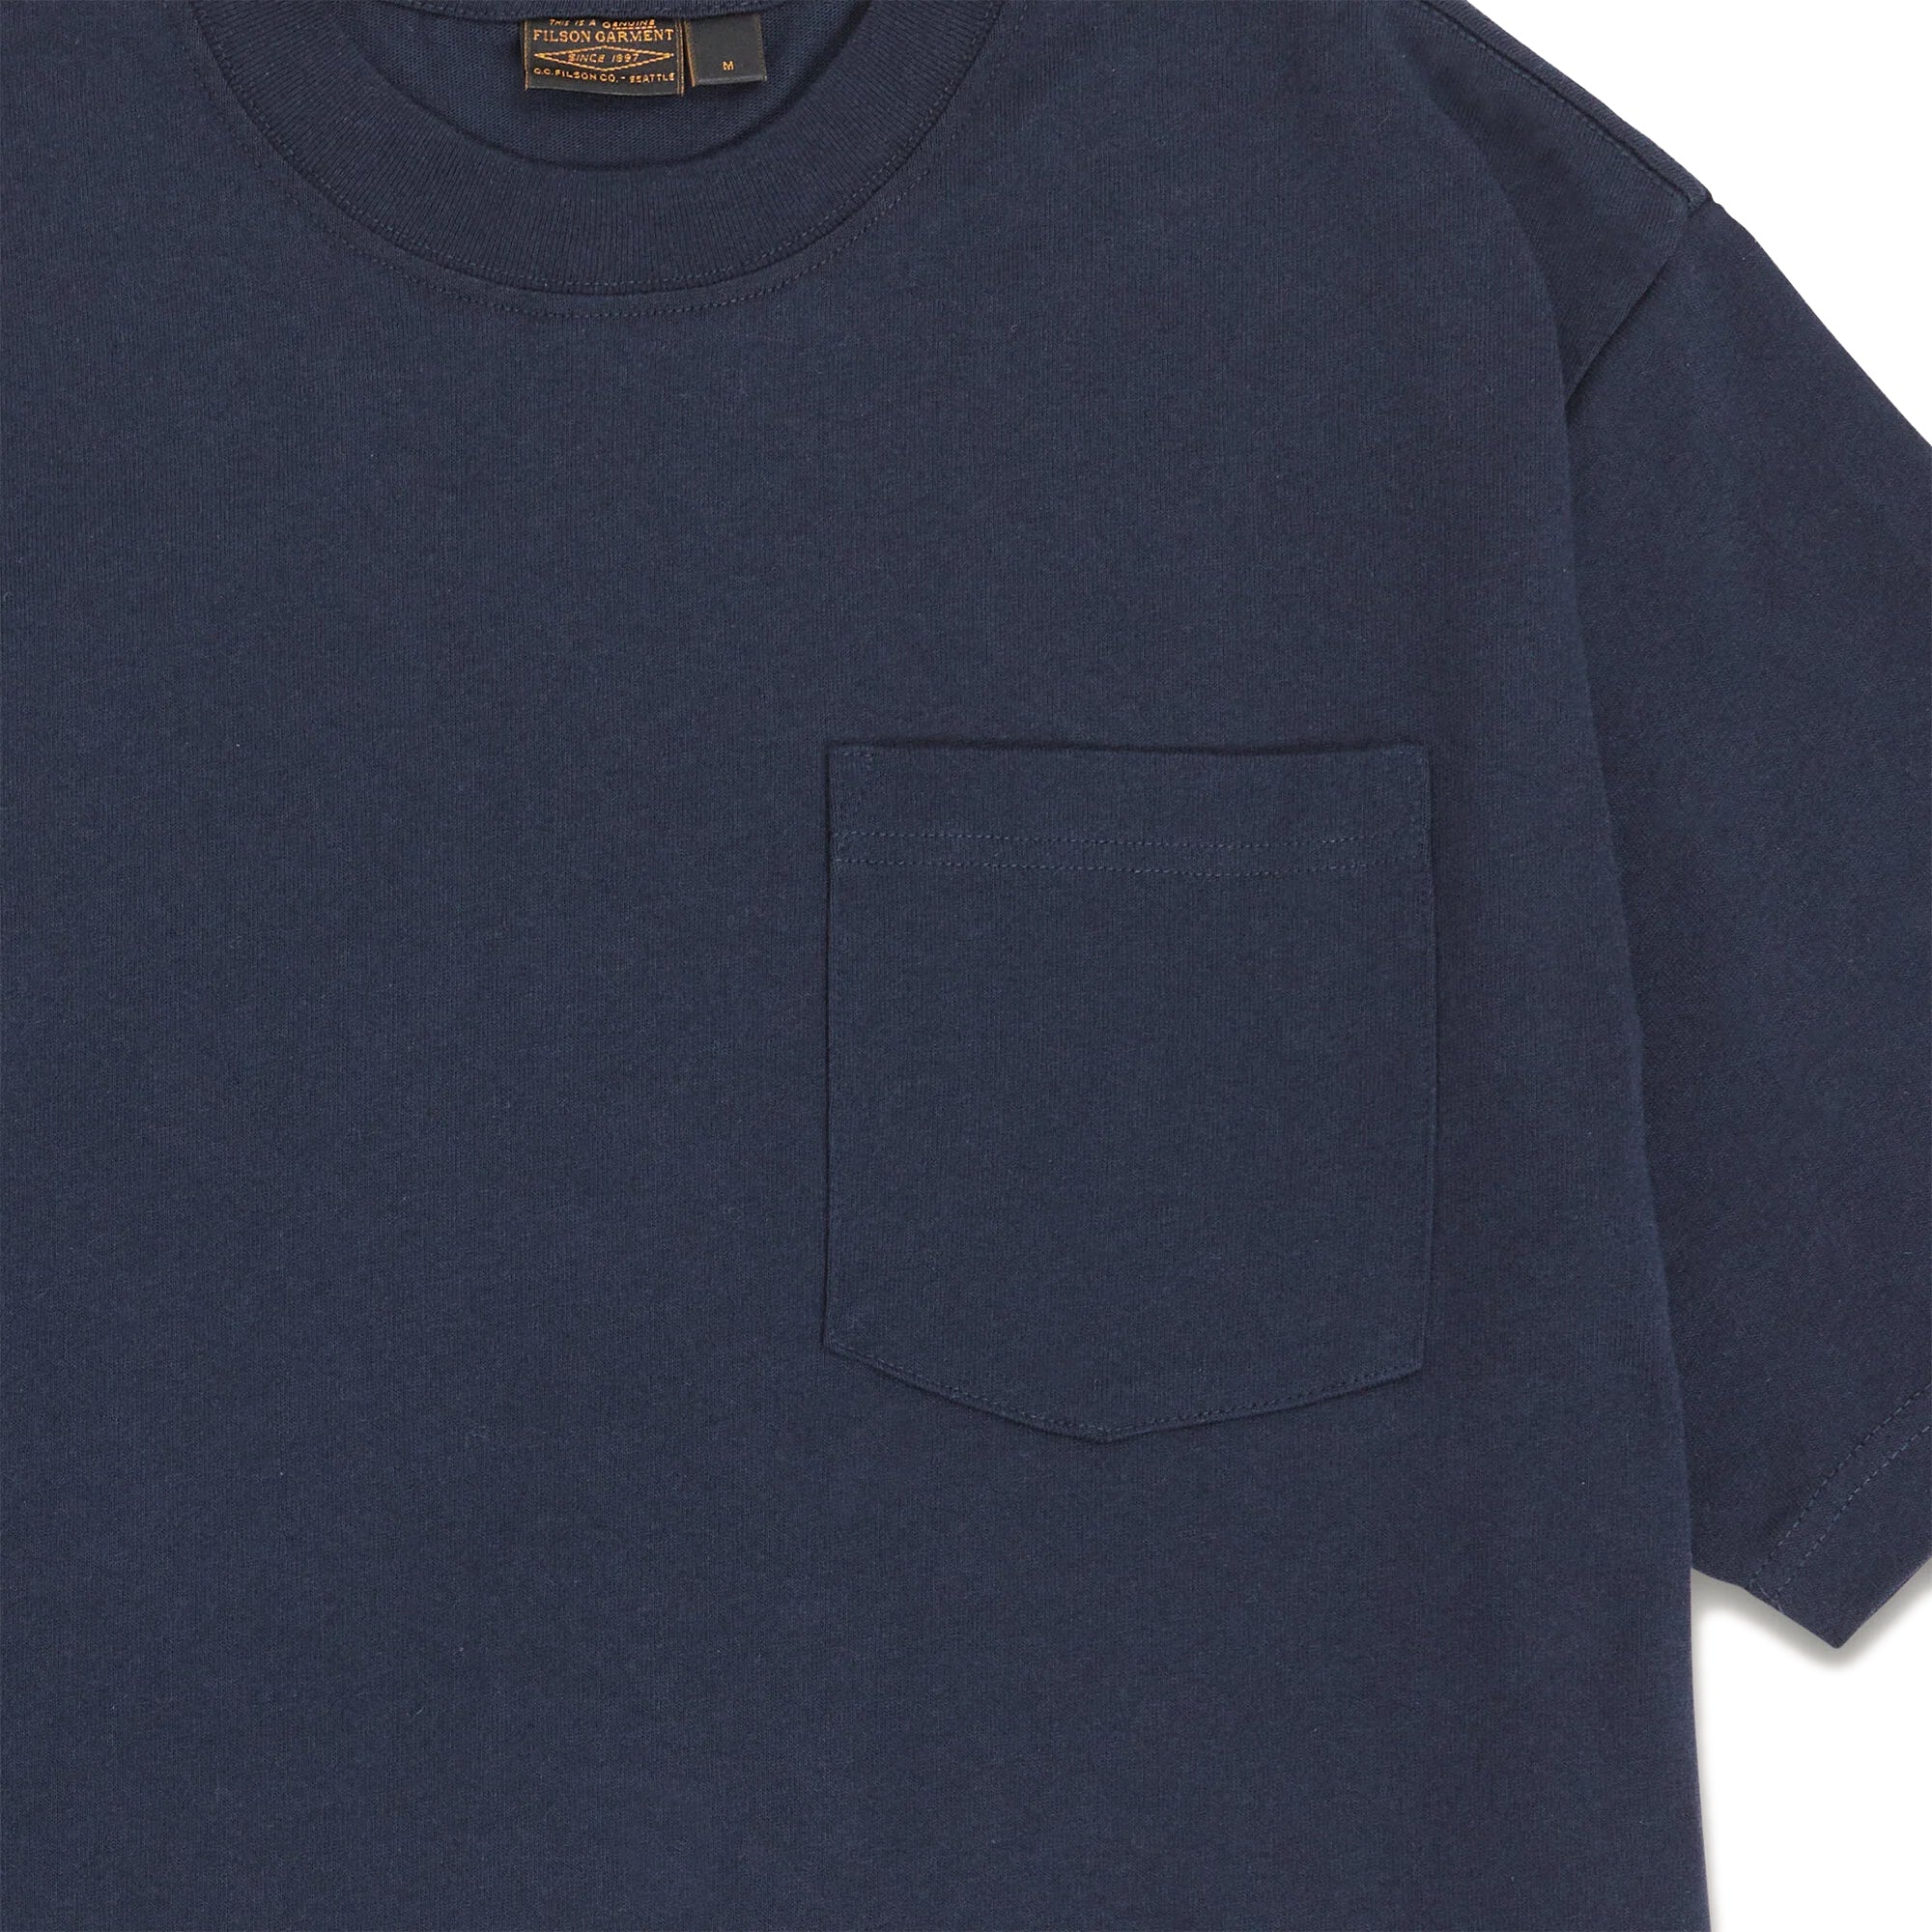 Filson Pioneer Solid One Pocket T-Shirt - Dark Navy